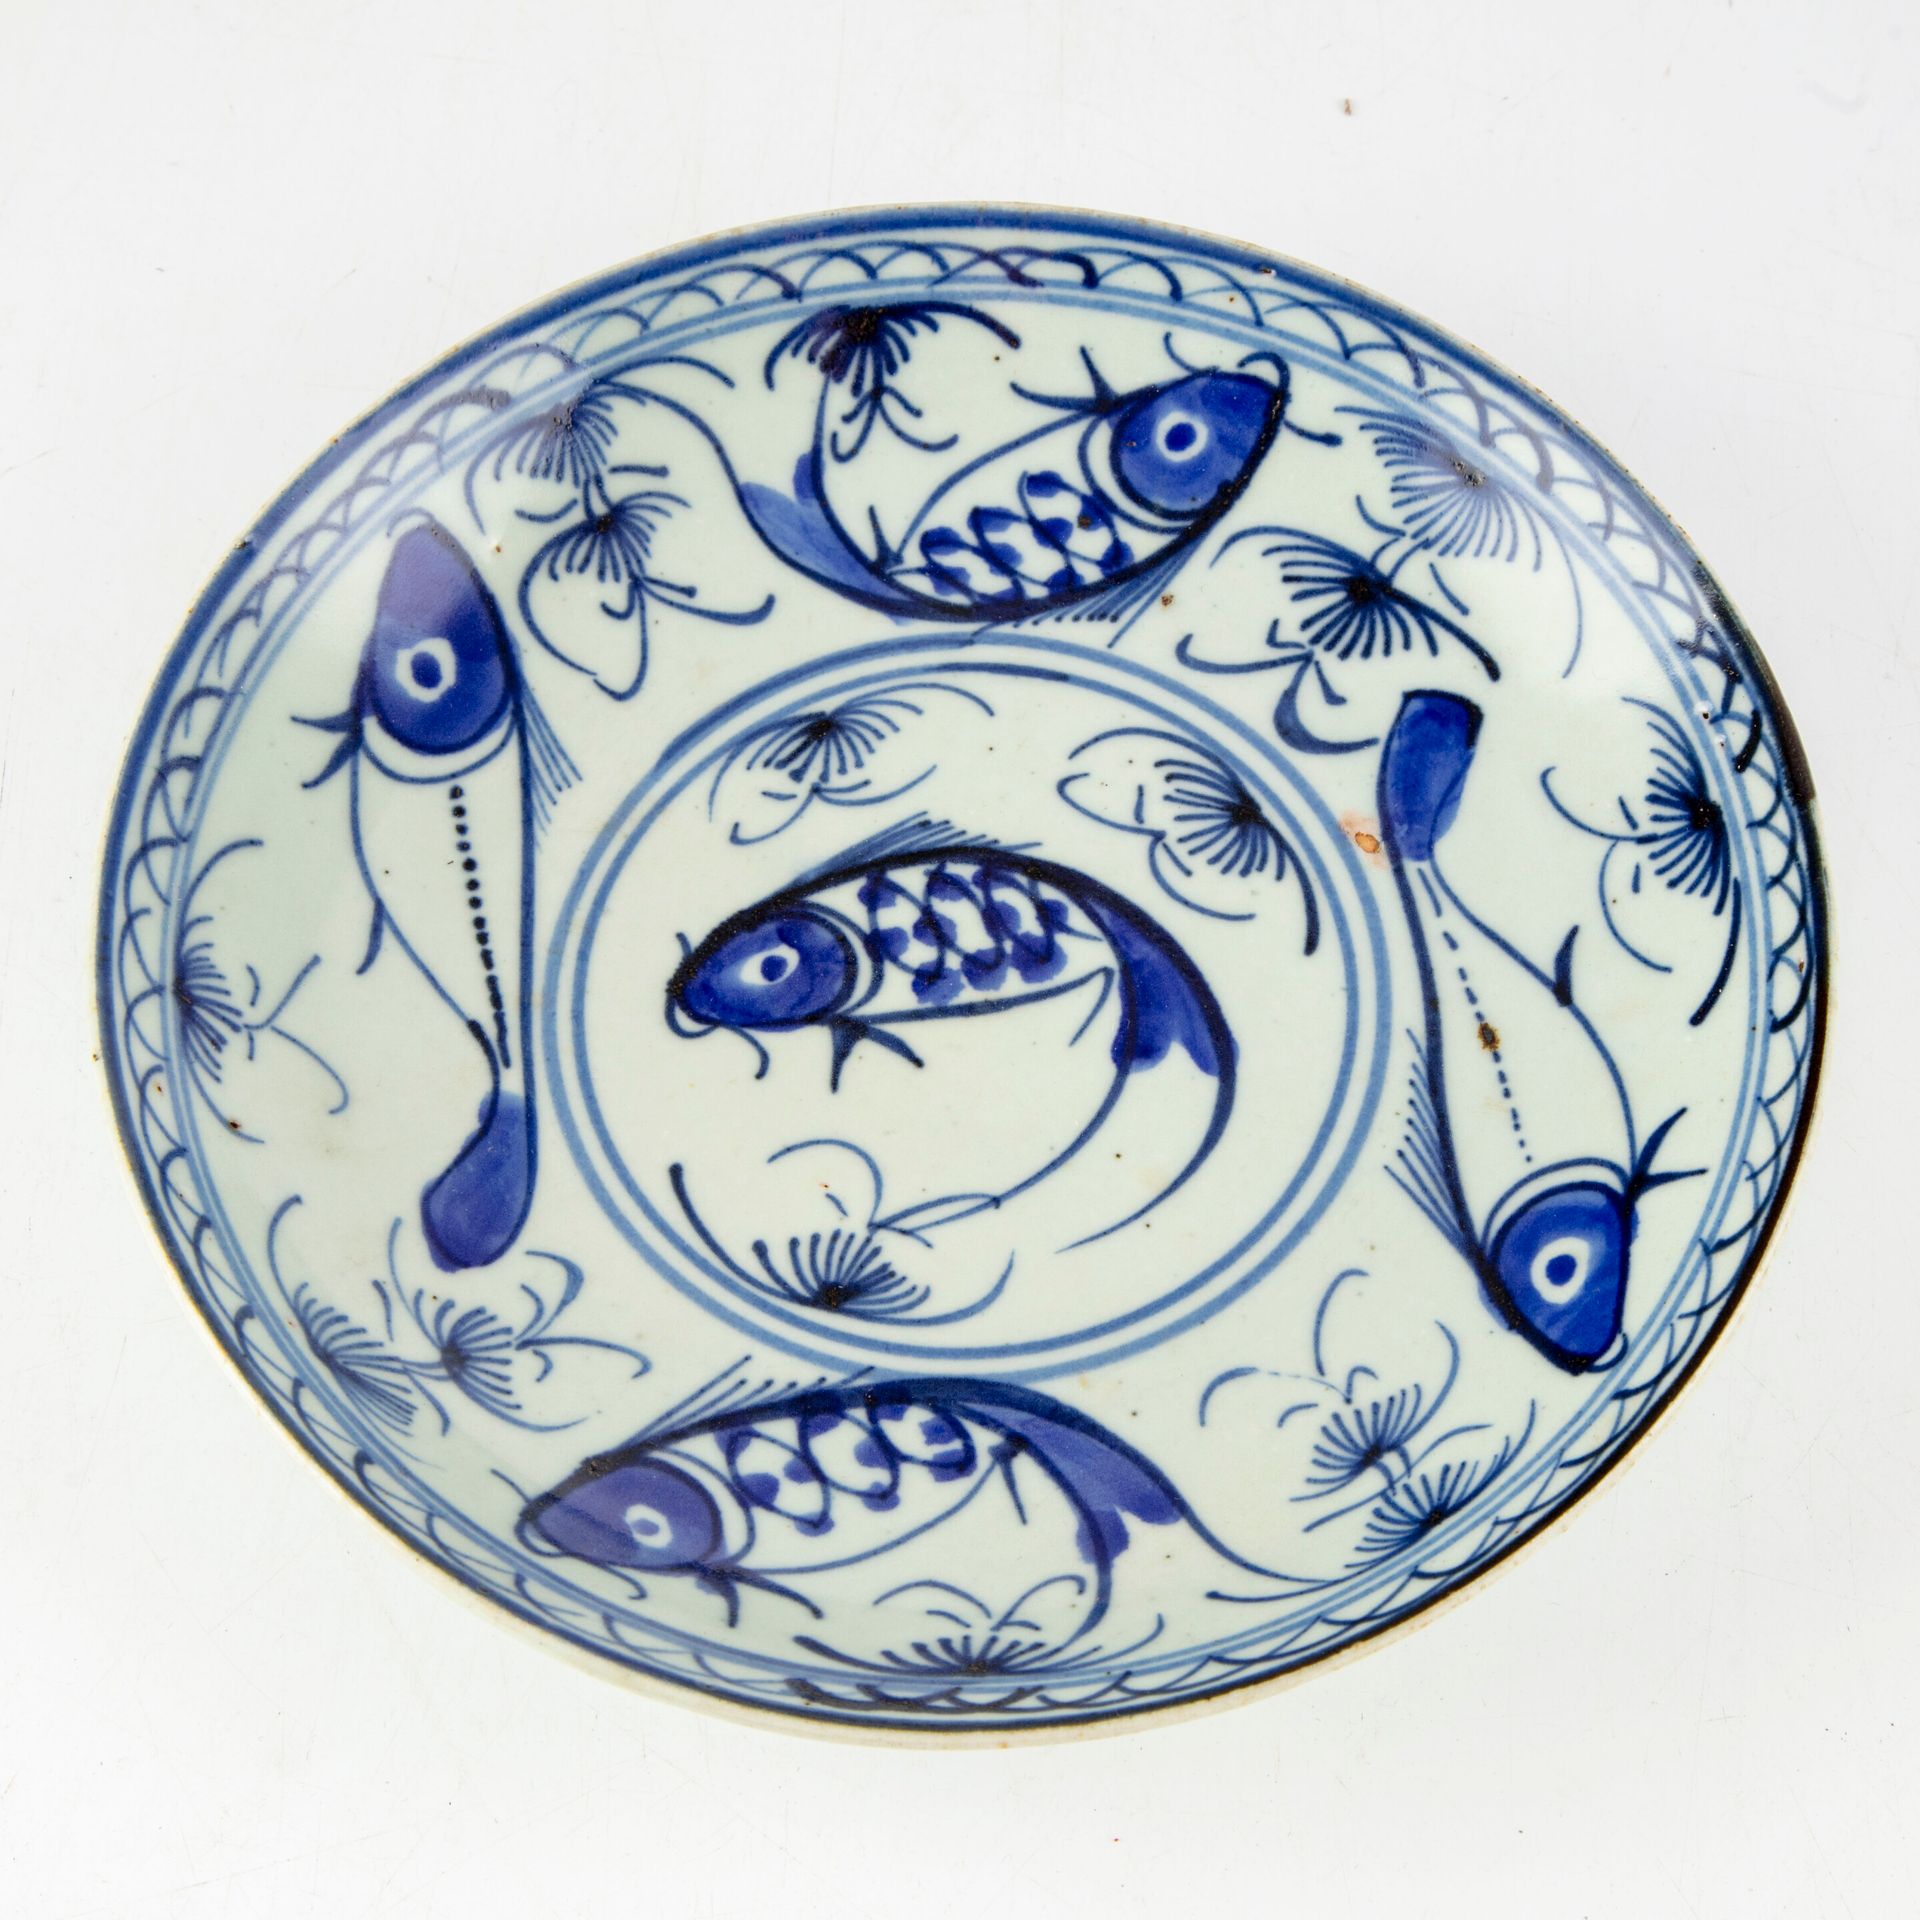 Null Teller aus glasiertem Porzellan mit blau-weißem Fischdekor.

Markierung unt&hellip;